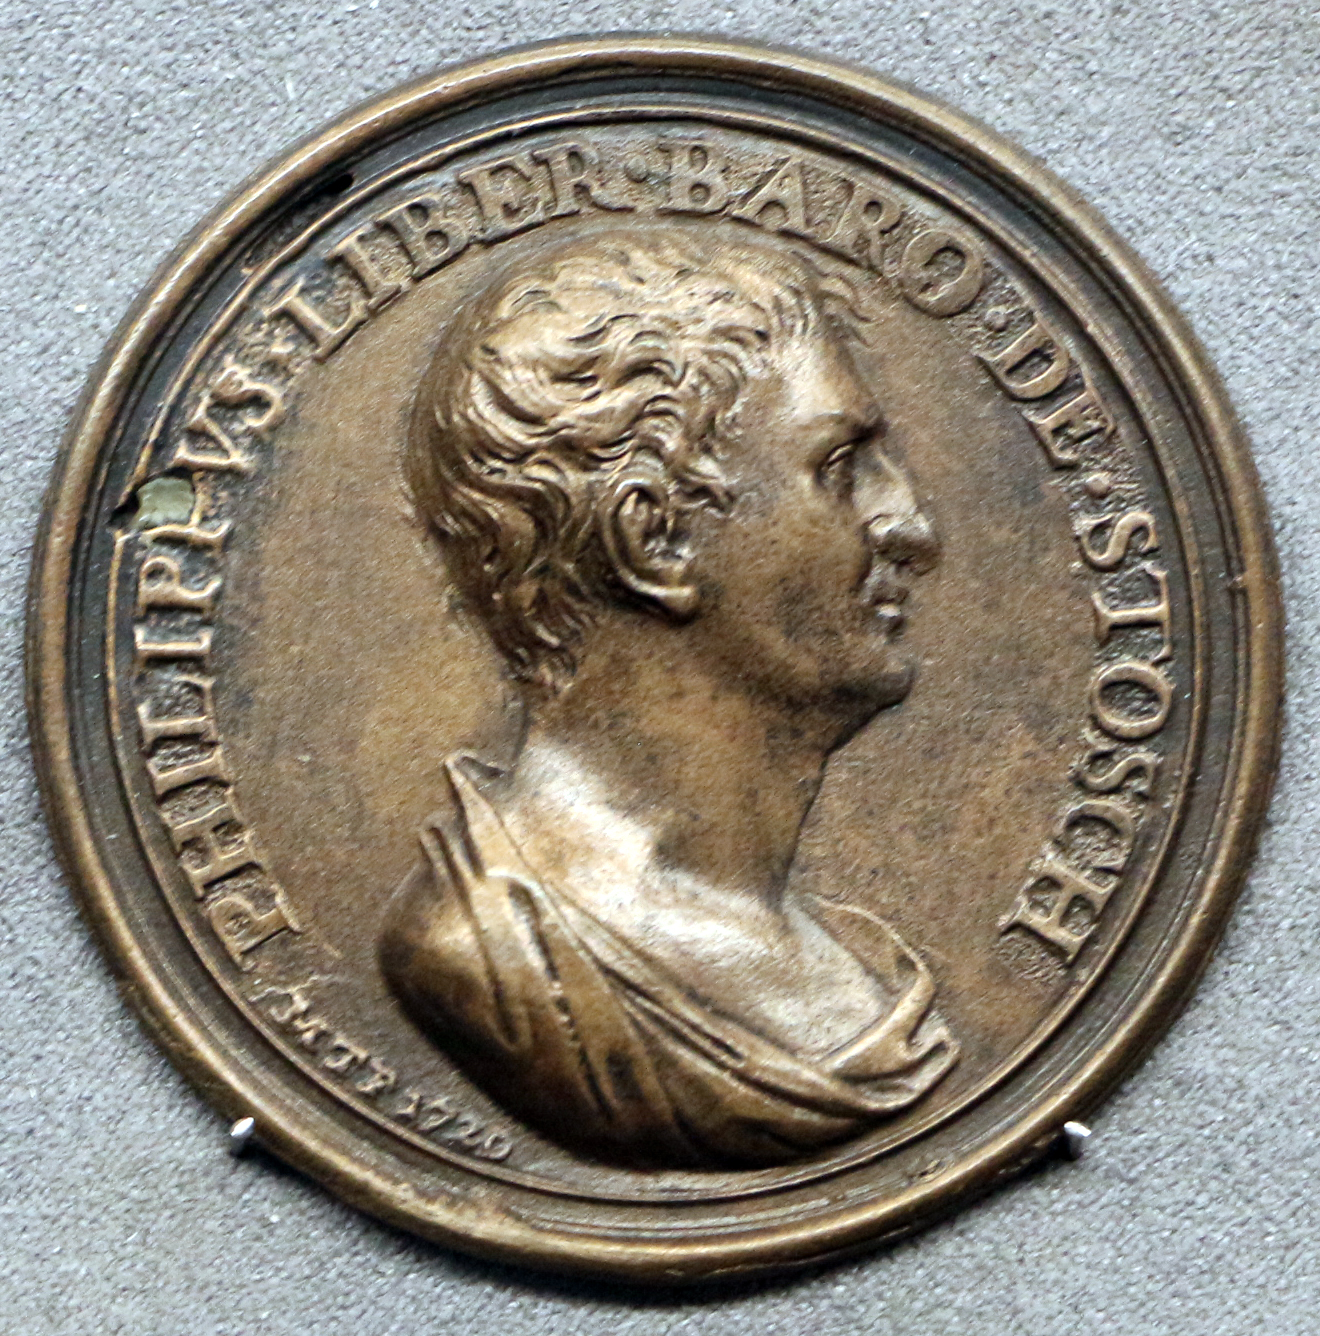 Stosch, Philpp von medal by Marcus Tuscher 1738 (Bargello).jpg